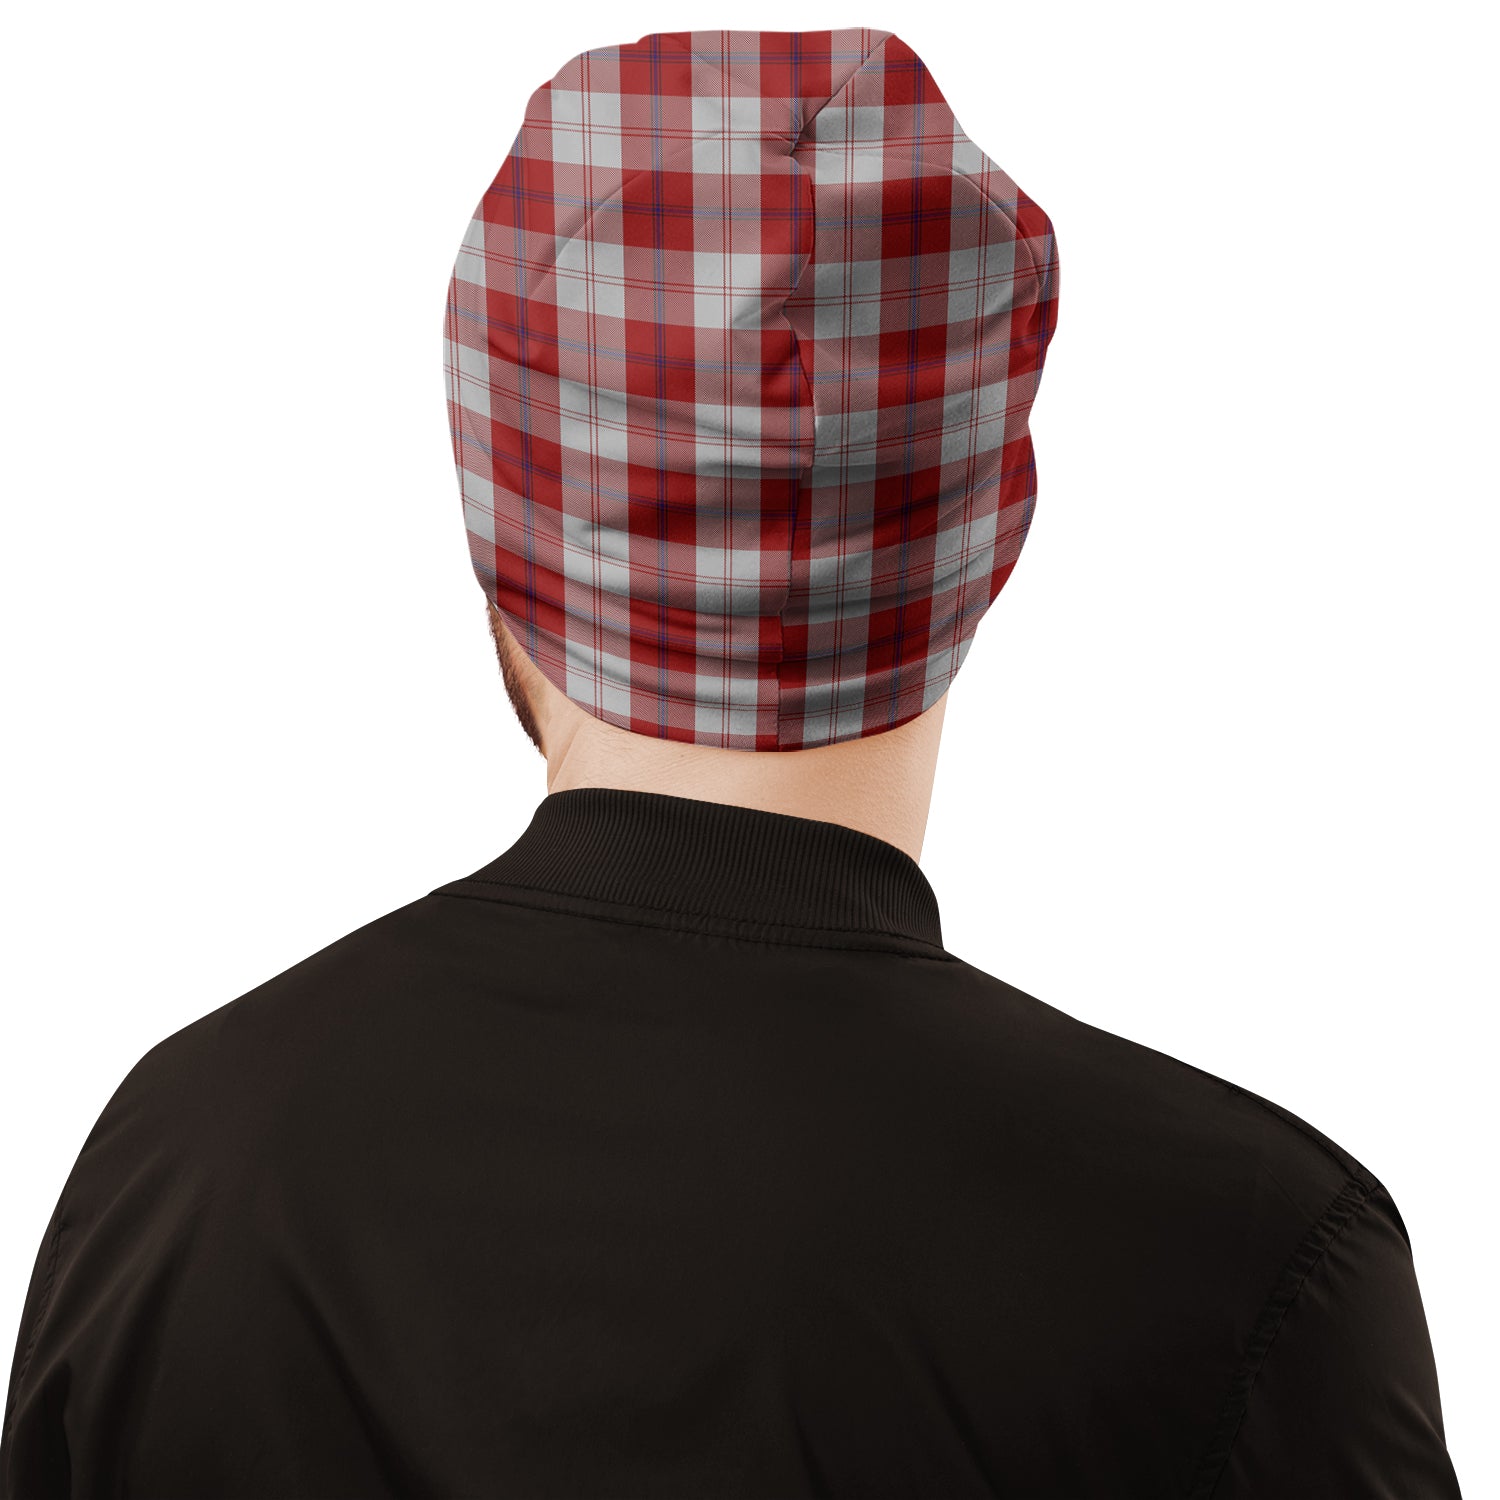 cunningham-dress-tartan-beanies-hat